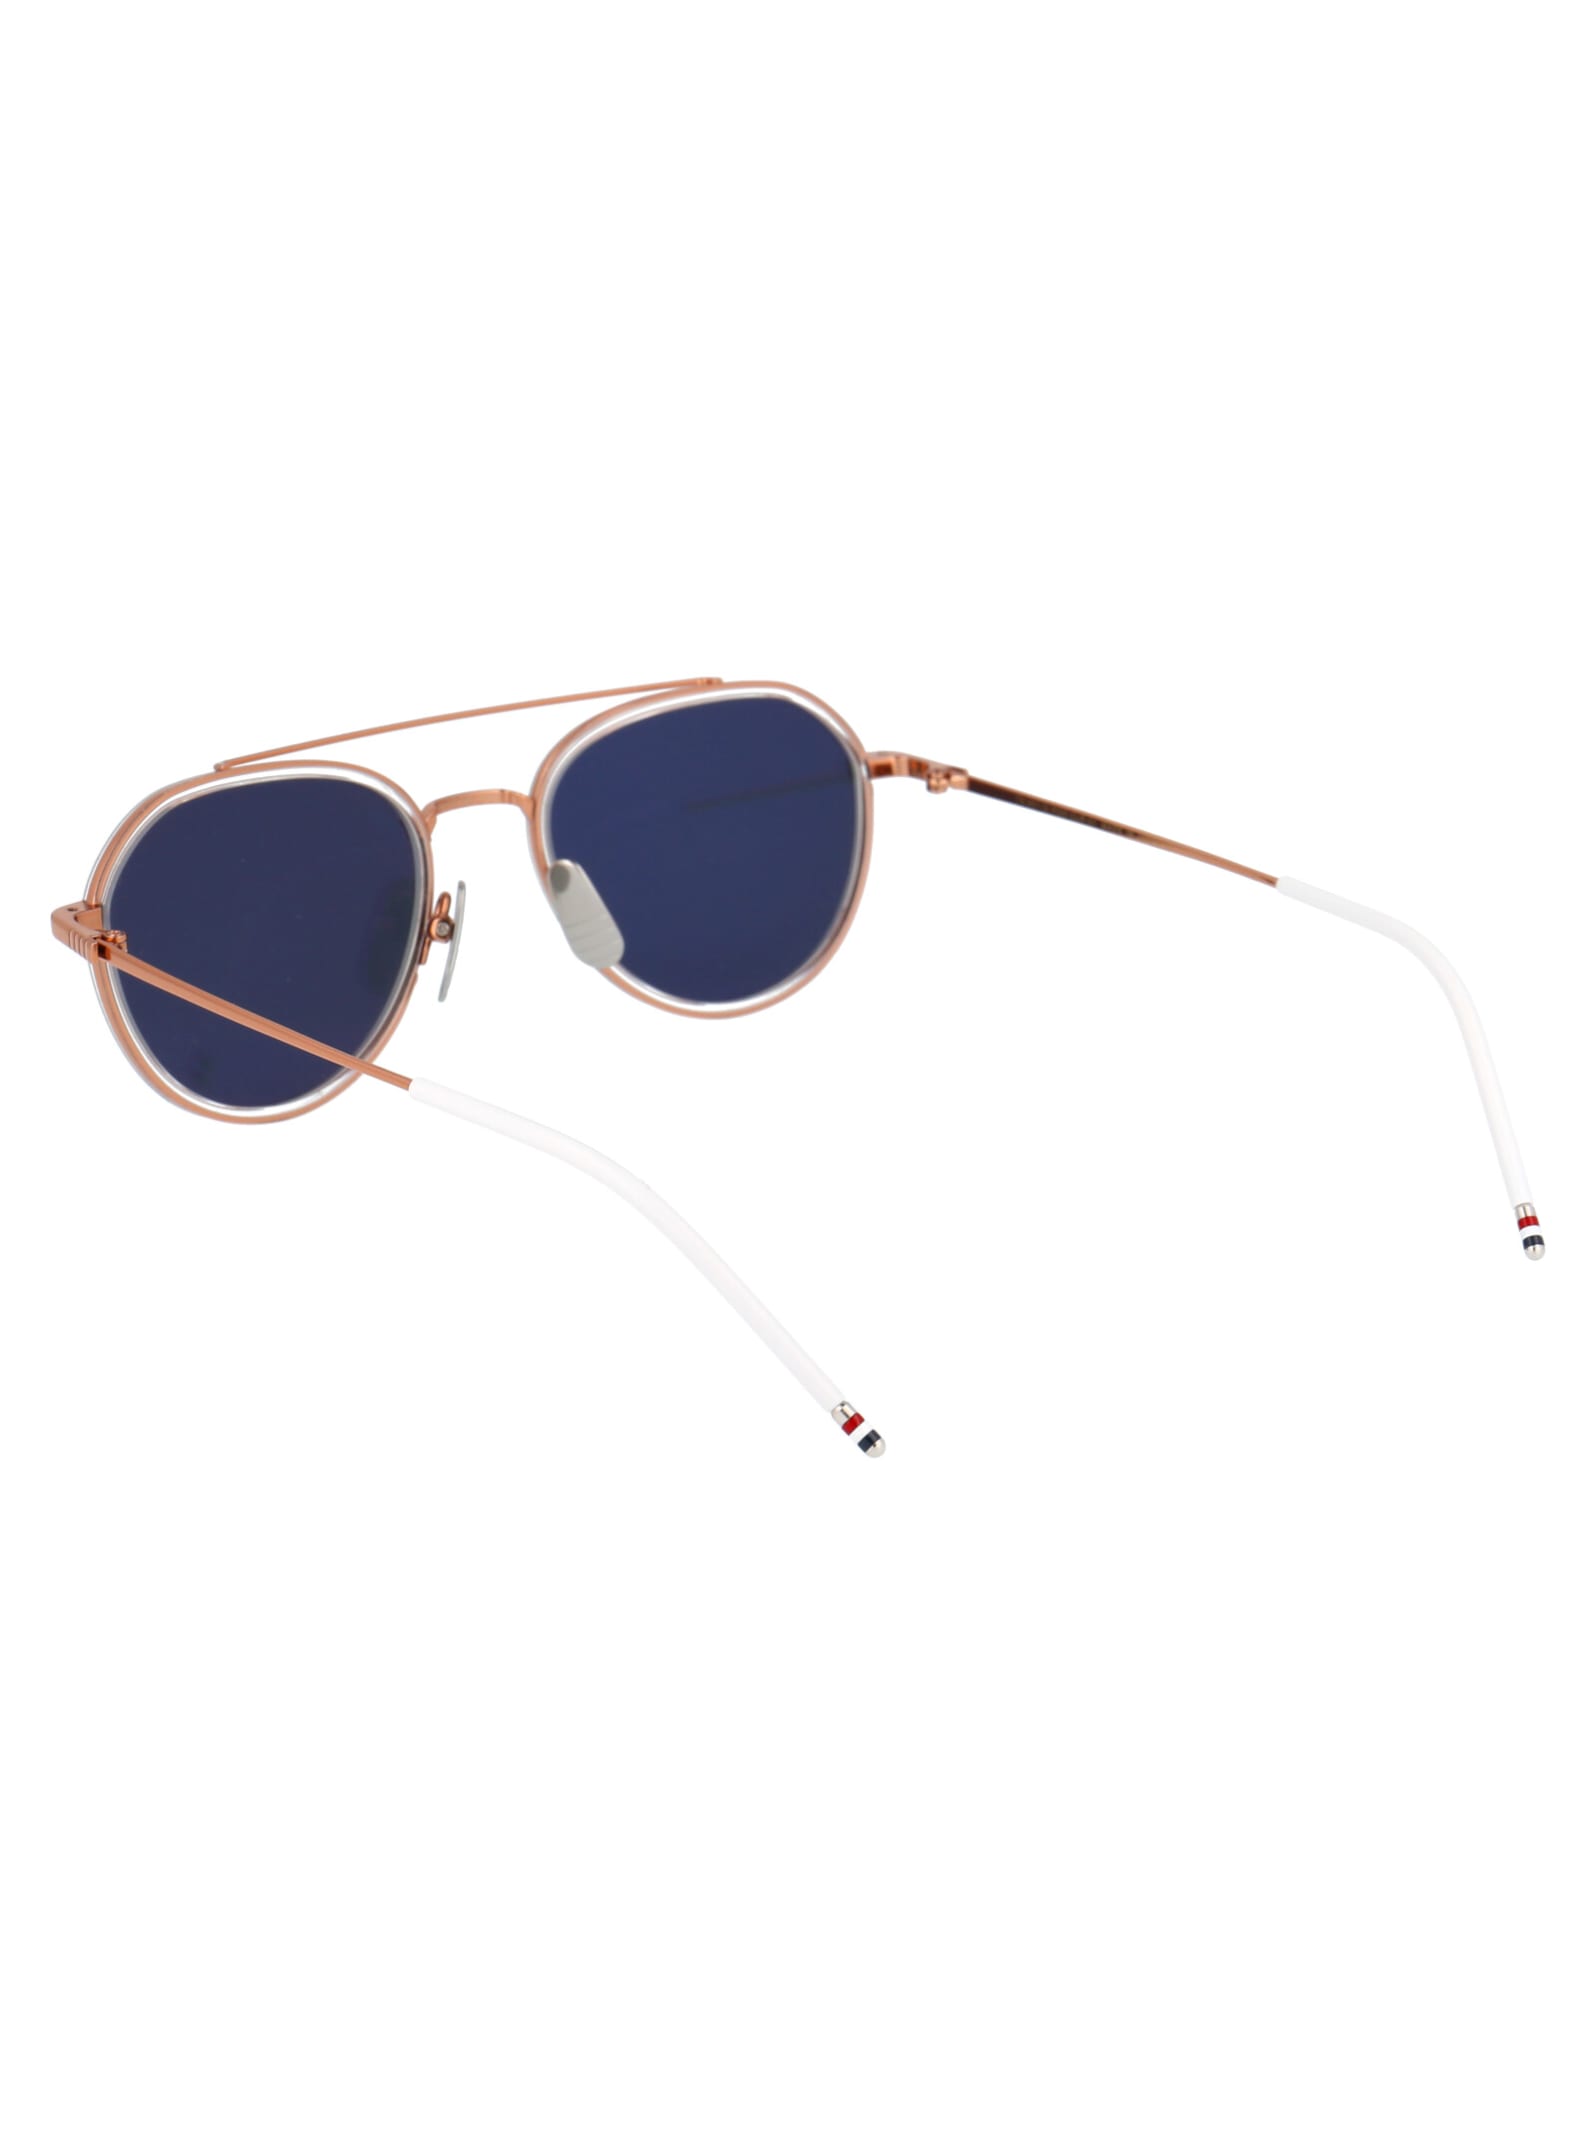 Shop Thom Browne Tb-801 Sunglasses In Rose Gold - Crystal Clear W/ Dark Grey - Milky Gold Flash - Ar